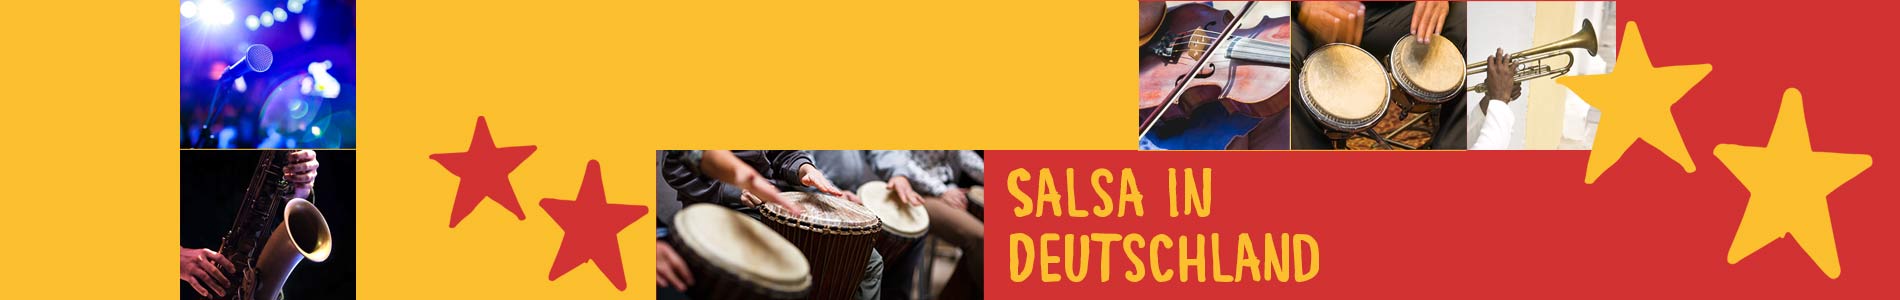 Salsa in Dahme – Salsa lernen und tanzen, Tanzkurse, Partys, Veranstaltungen